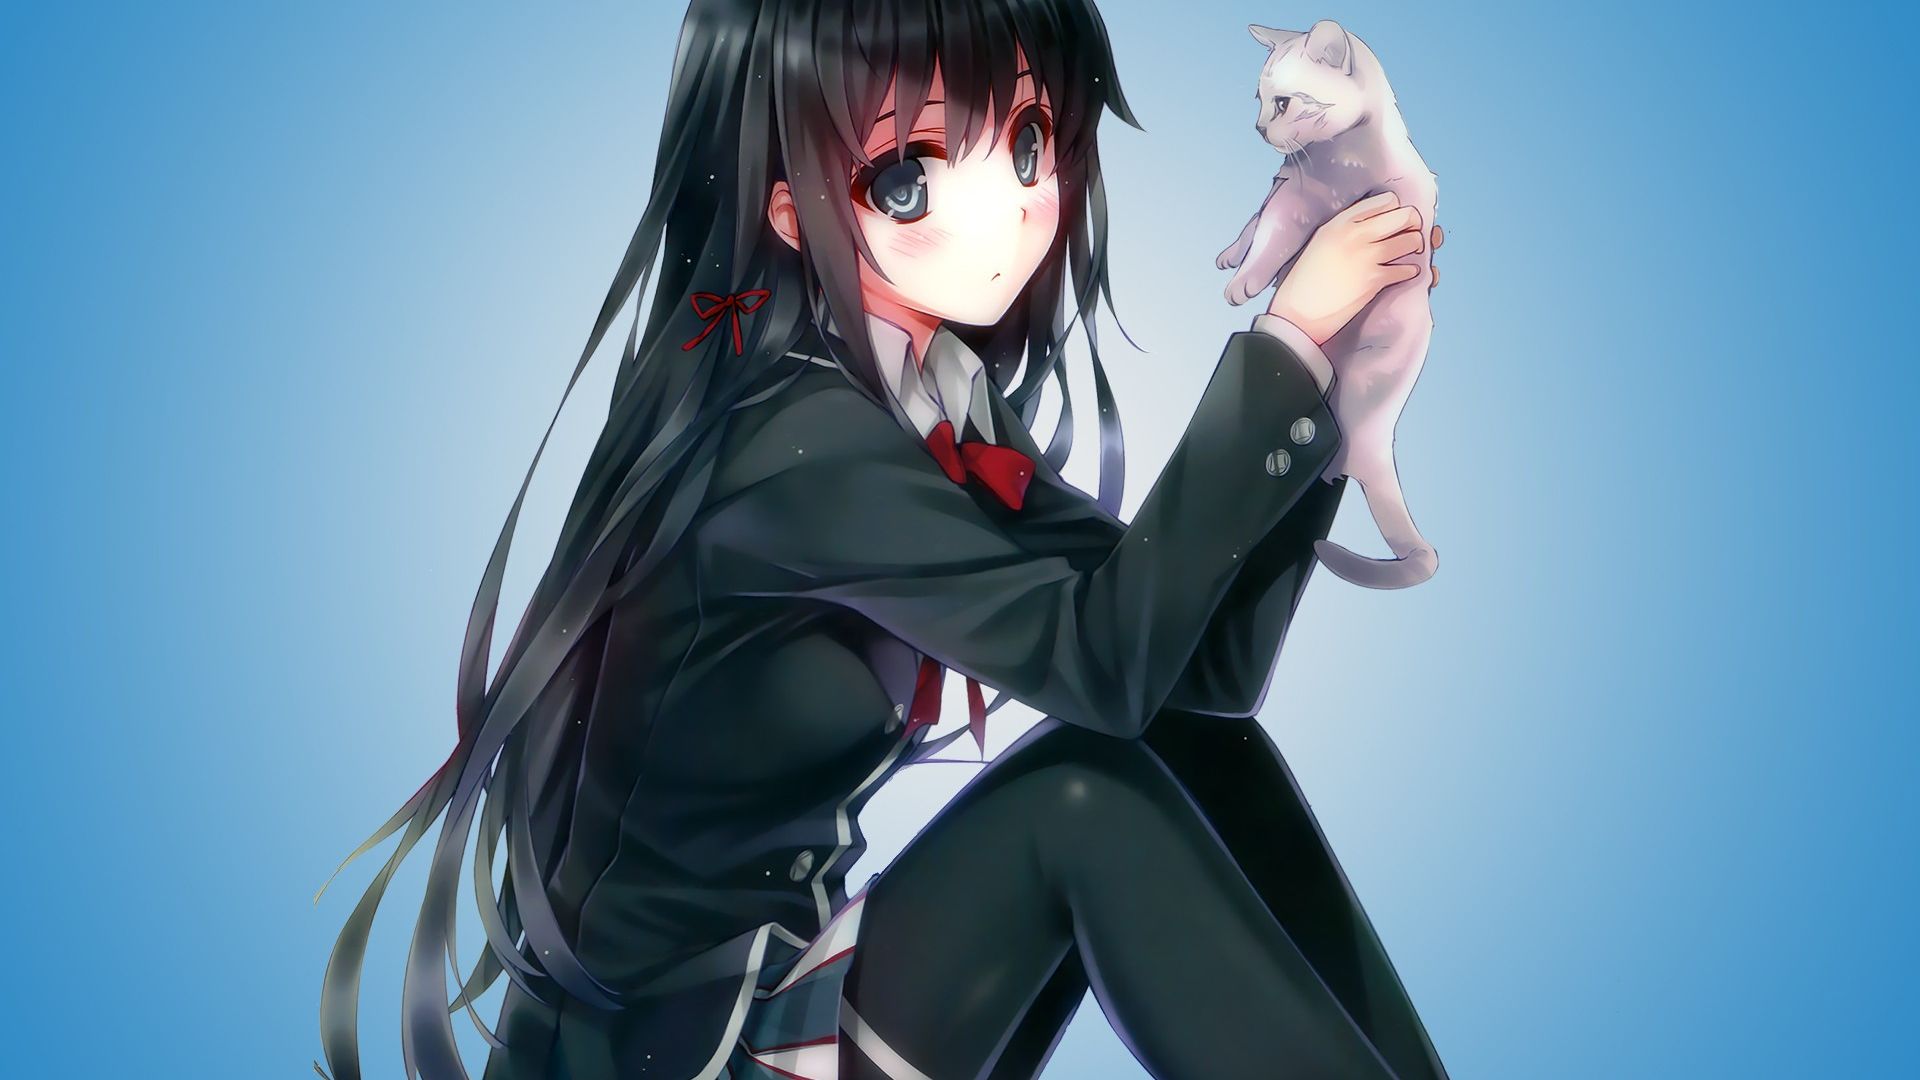 Wallpaper Gray eye anime girl with kitten